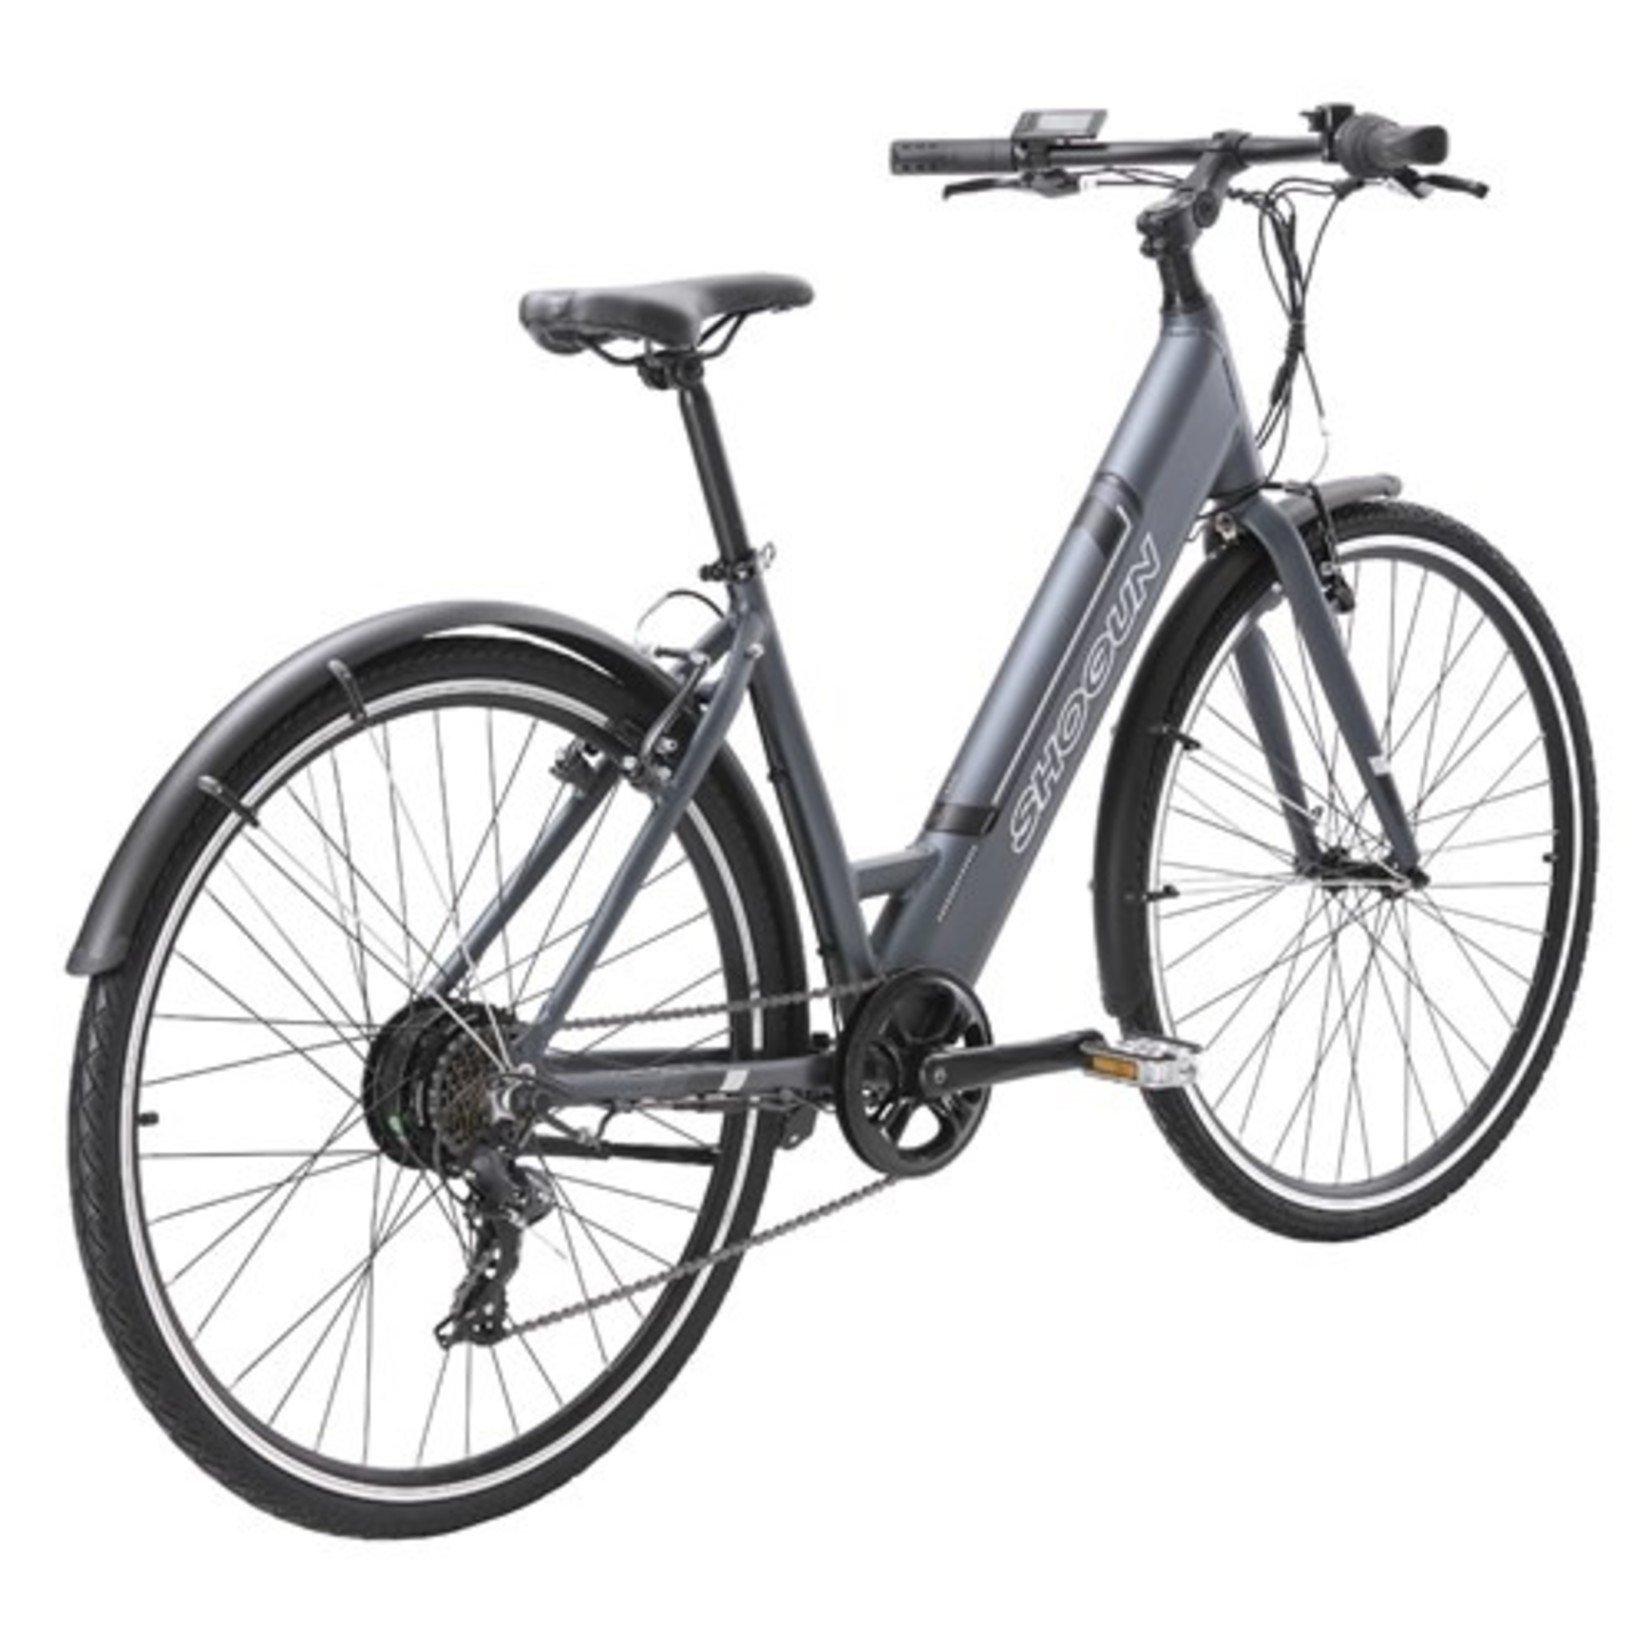 Shogun Shogun E-Bike - EB1 Step Through Electric Bicycle - Charcoal - 46cm(Medium)